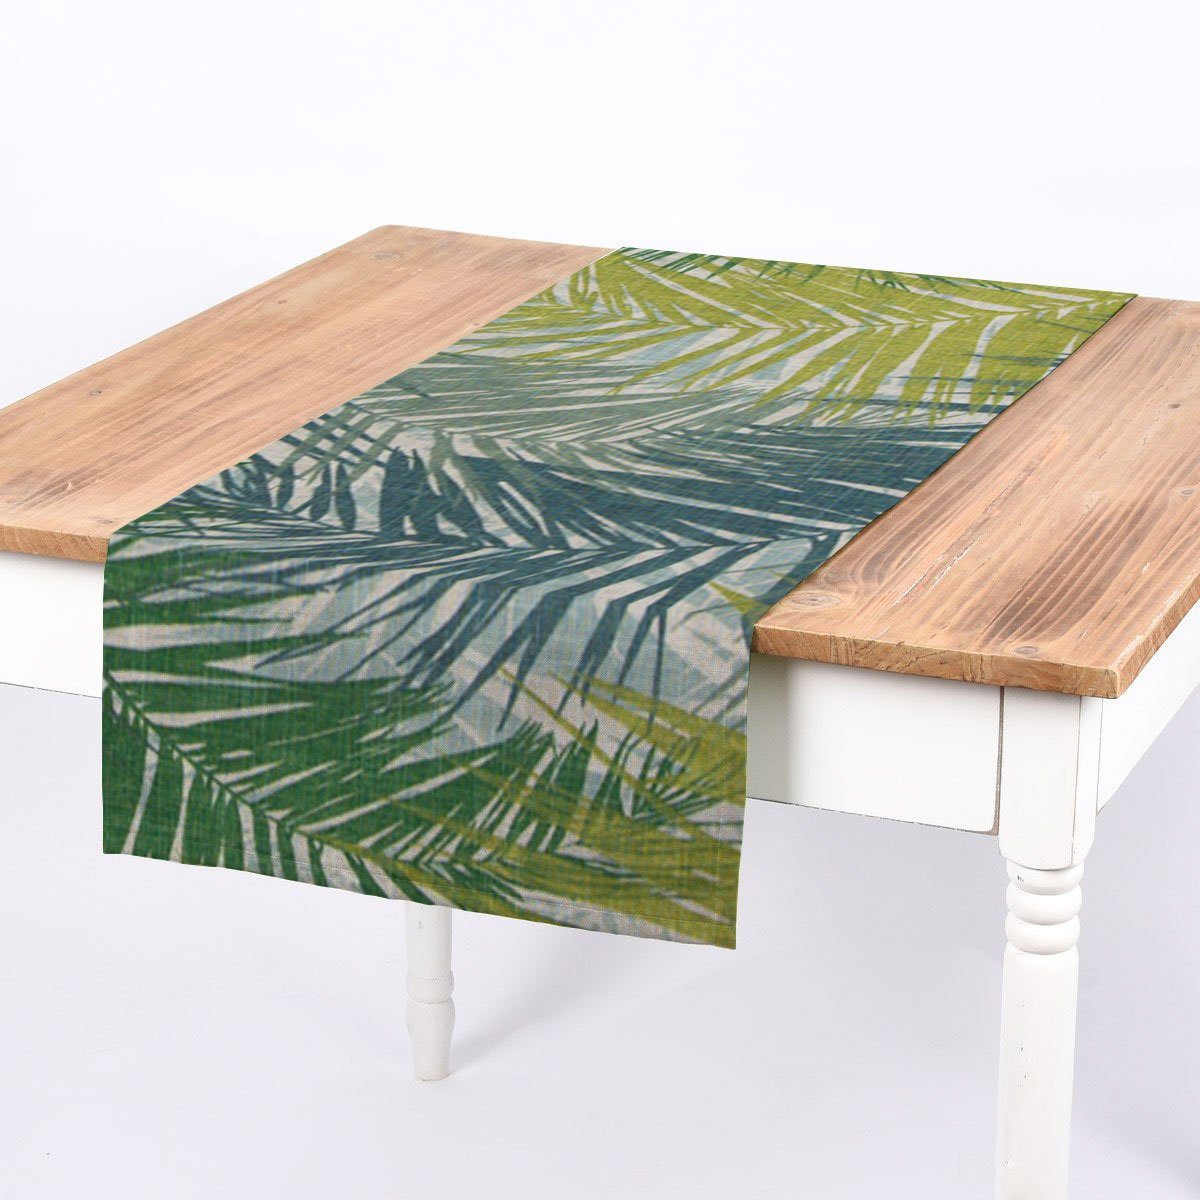 SCHÖNER LEBEN. Tischläufer SCHÖNER LEBEN. Tischläufer Palmenblätter 40x160cm, handmade | Tischläufer